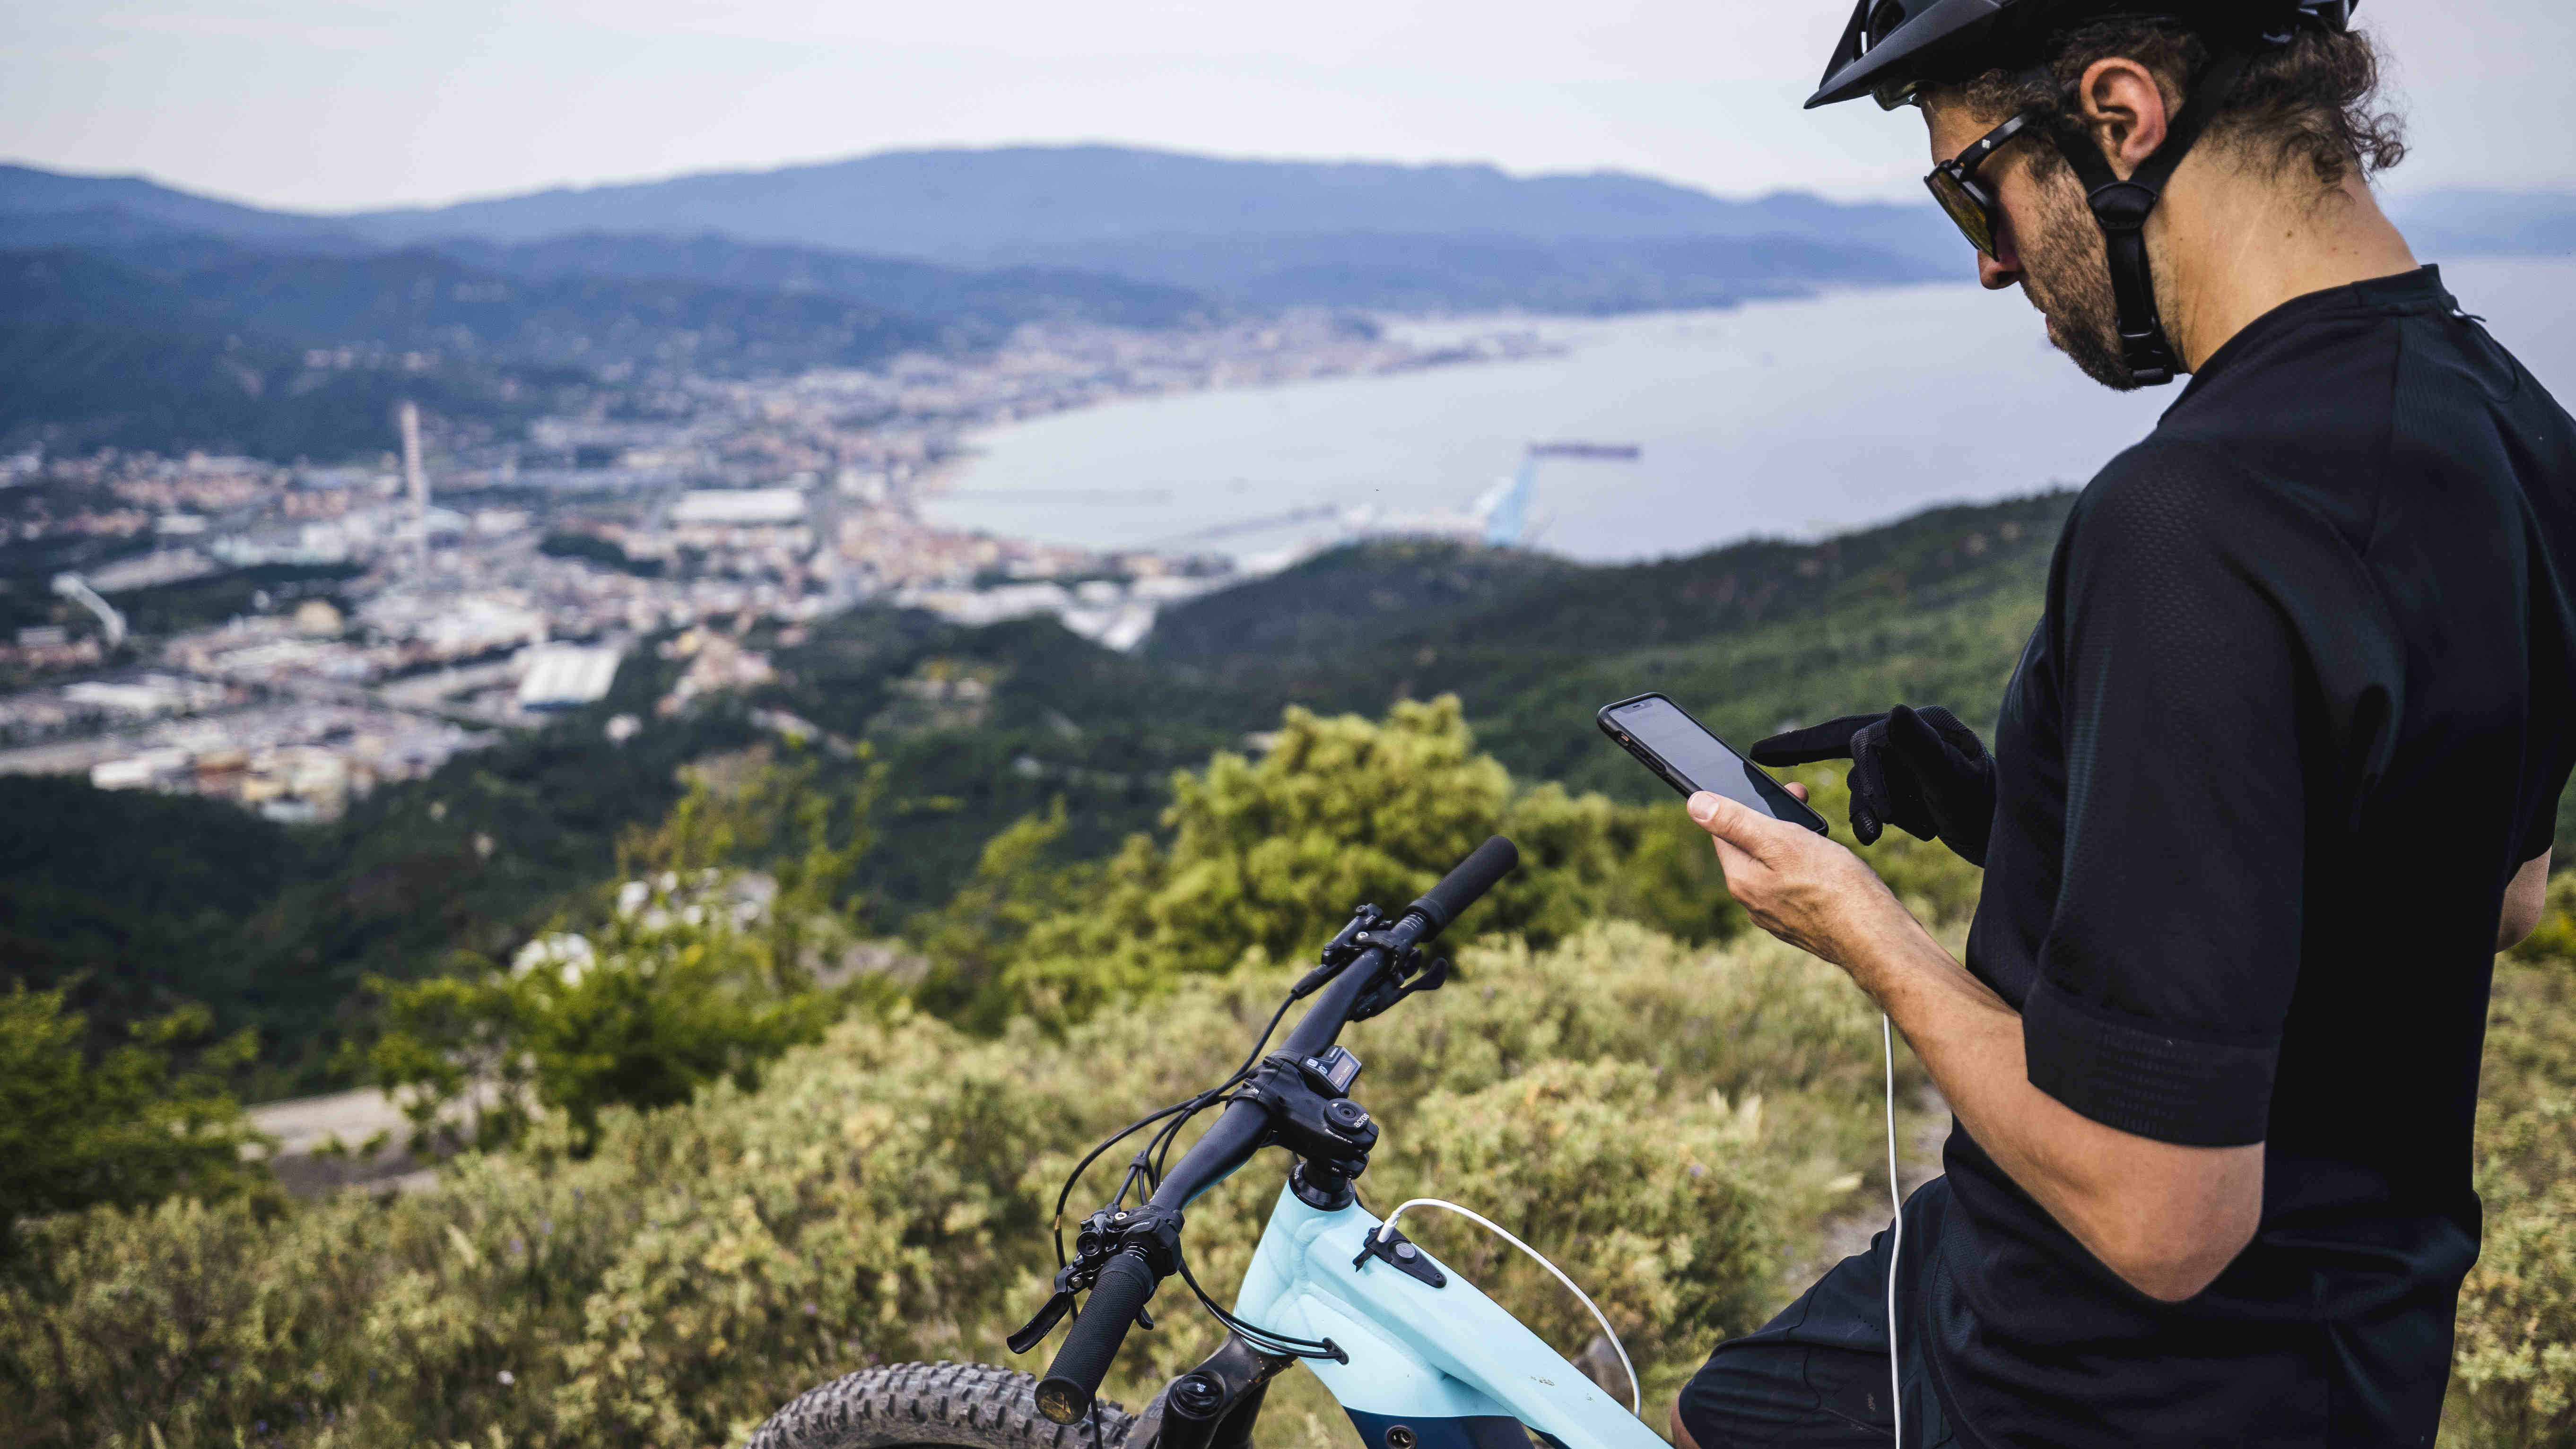 Où trouver des cartes topo Garmin gratuites adaptées au vélo ?